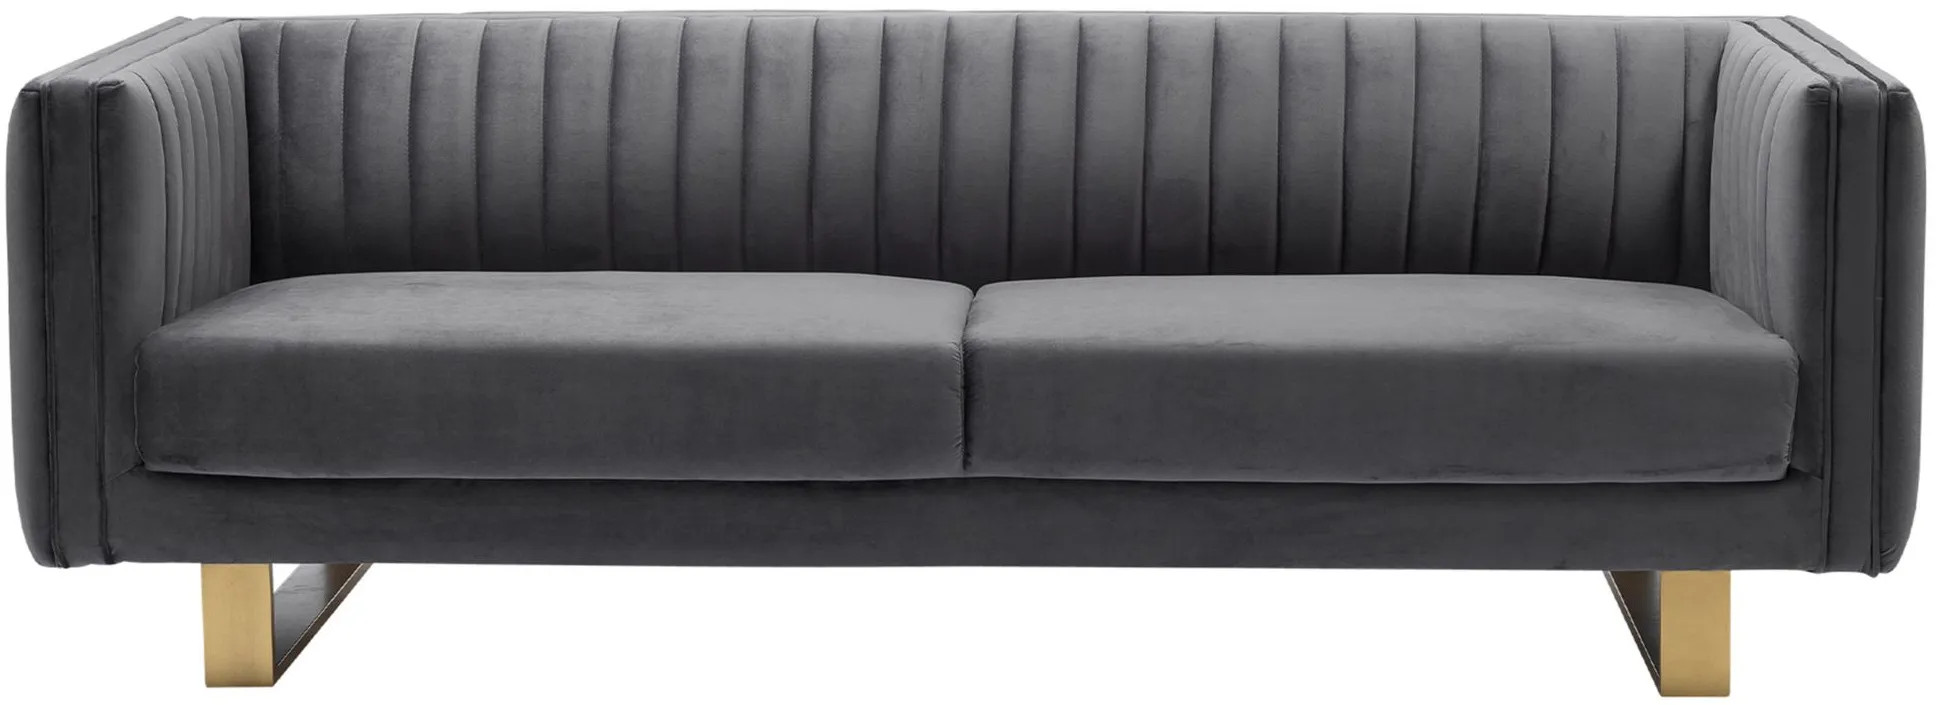 Delilah Sofa in Dark Gray by Armen Living